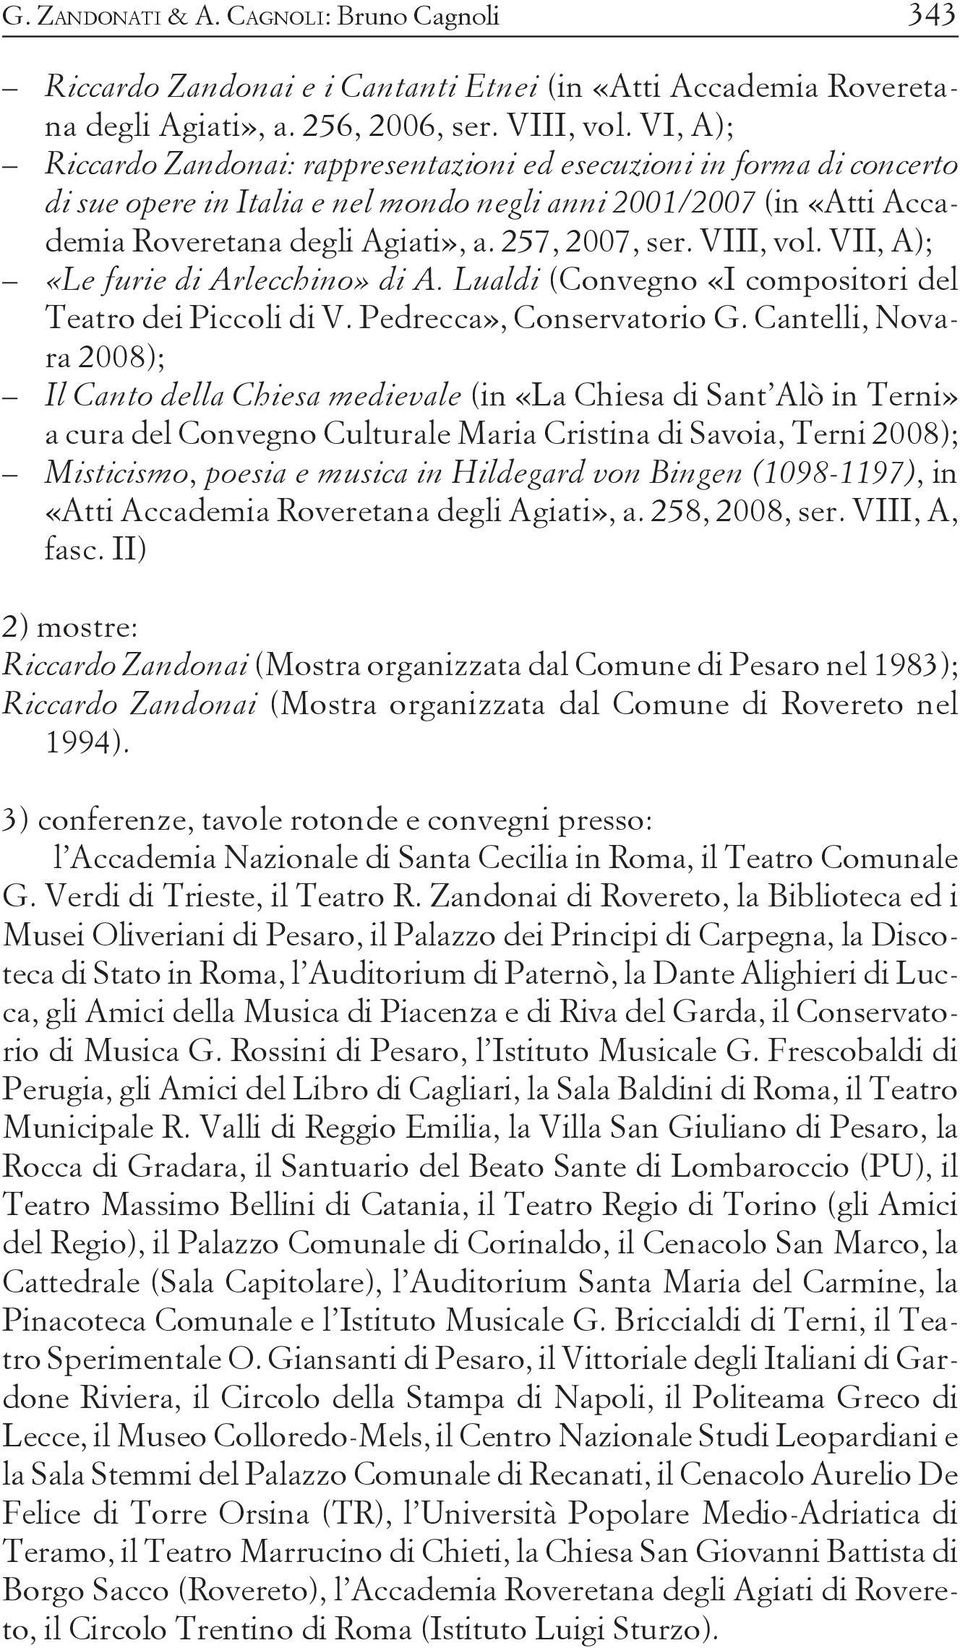 VIII, vol. VII, A); «Le furie di Arlecchino» di A. Lualdi (Convegno «I compositori del Teatro dei Piccoli di V. Pedrecca», Conservatorio G.